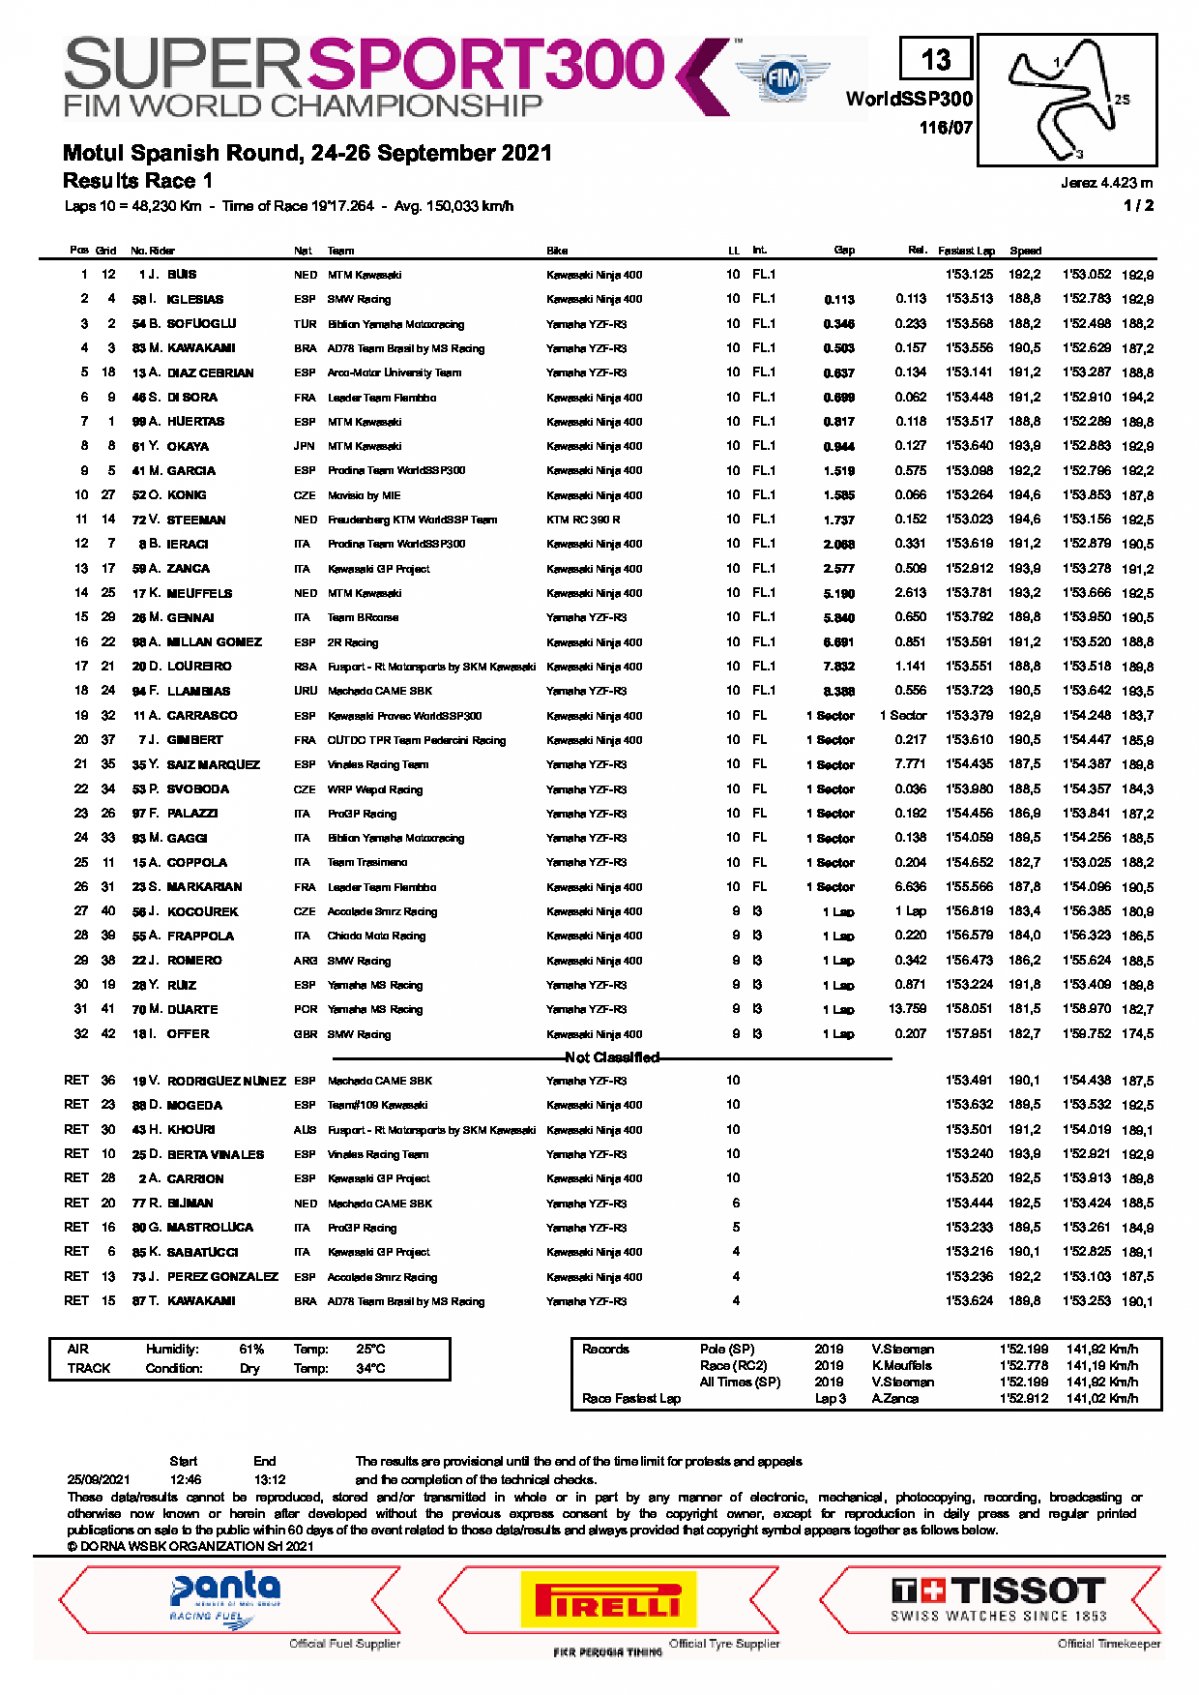 Результаты 1 гонки World Supersport 300, Circuito de Jerez (25/09/2021)